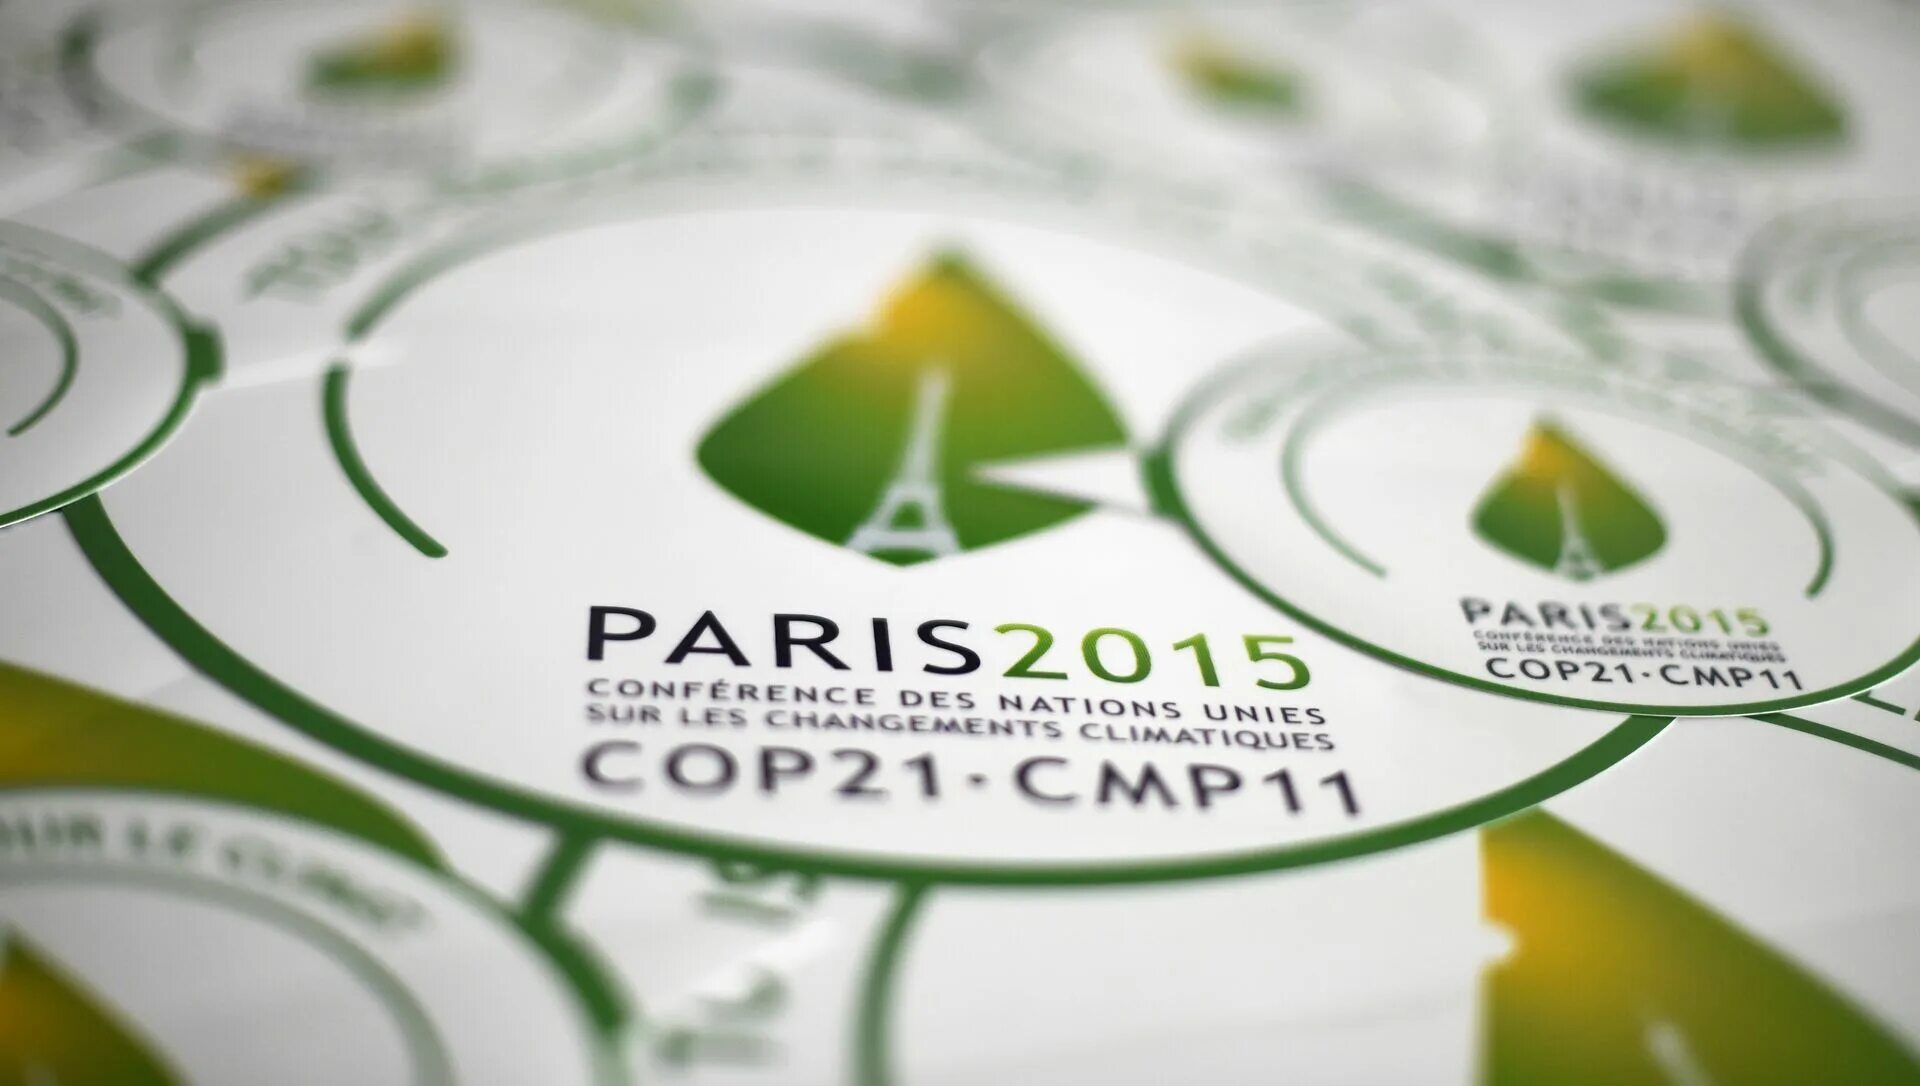 Парижское соглашение год. Парижское соглашение 2015 года. Парижское соглашение по климату. Парижское соглашение об изменении климата. Парижское соглашение по климату логотип.